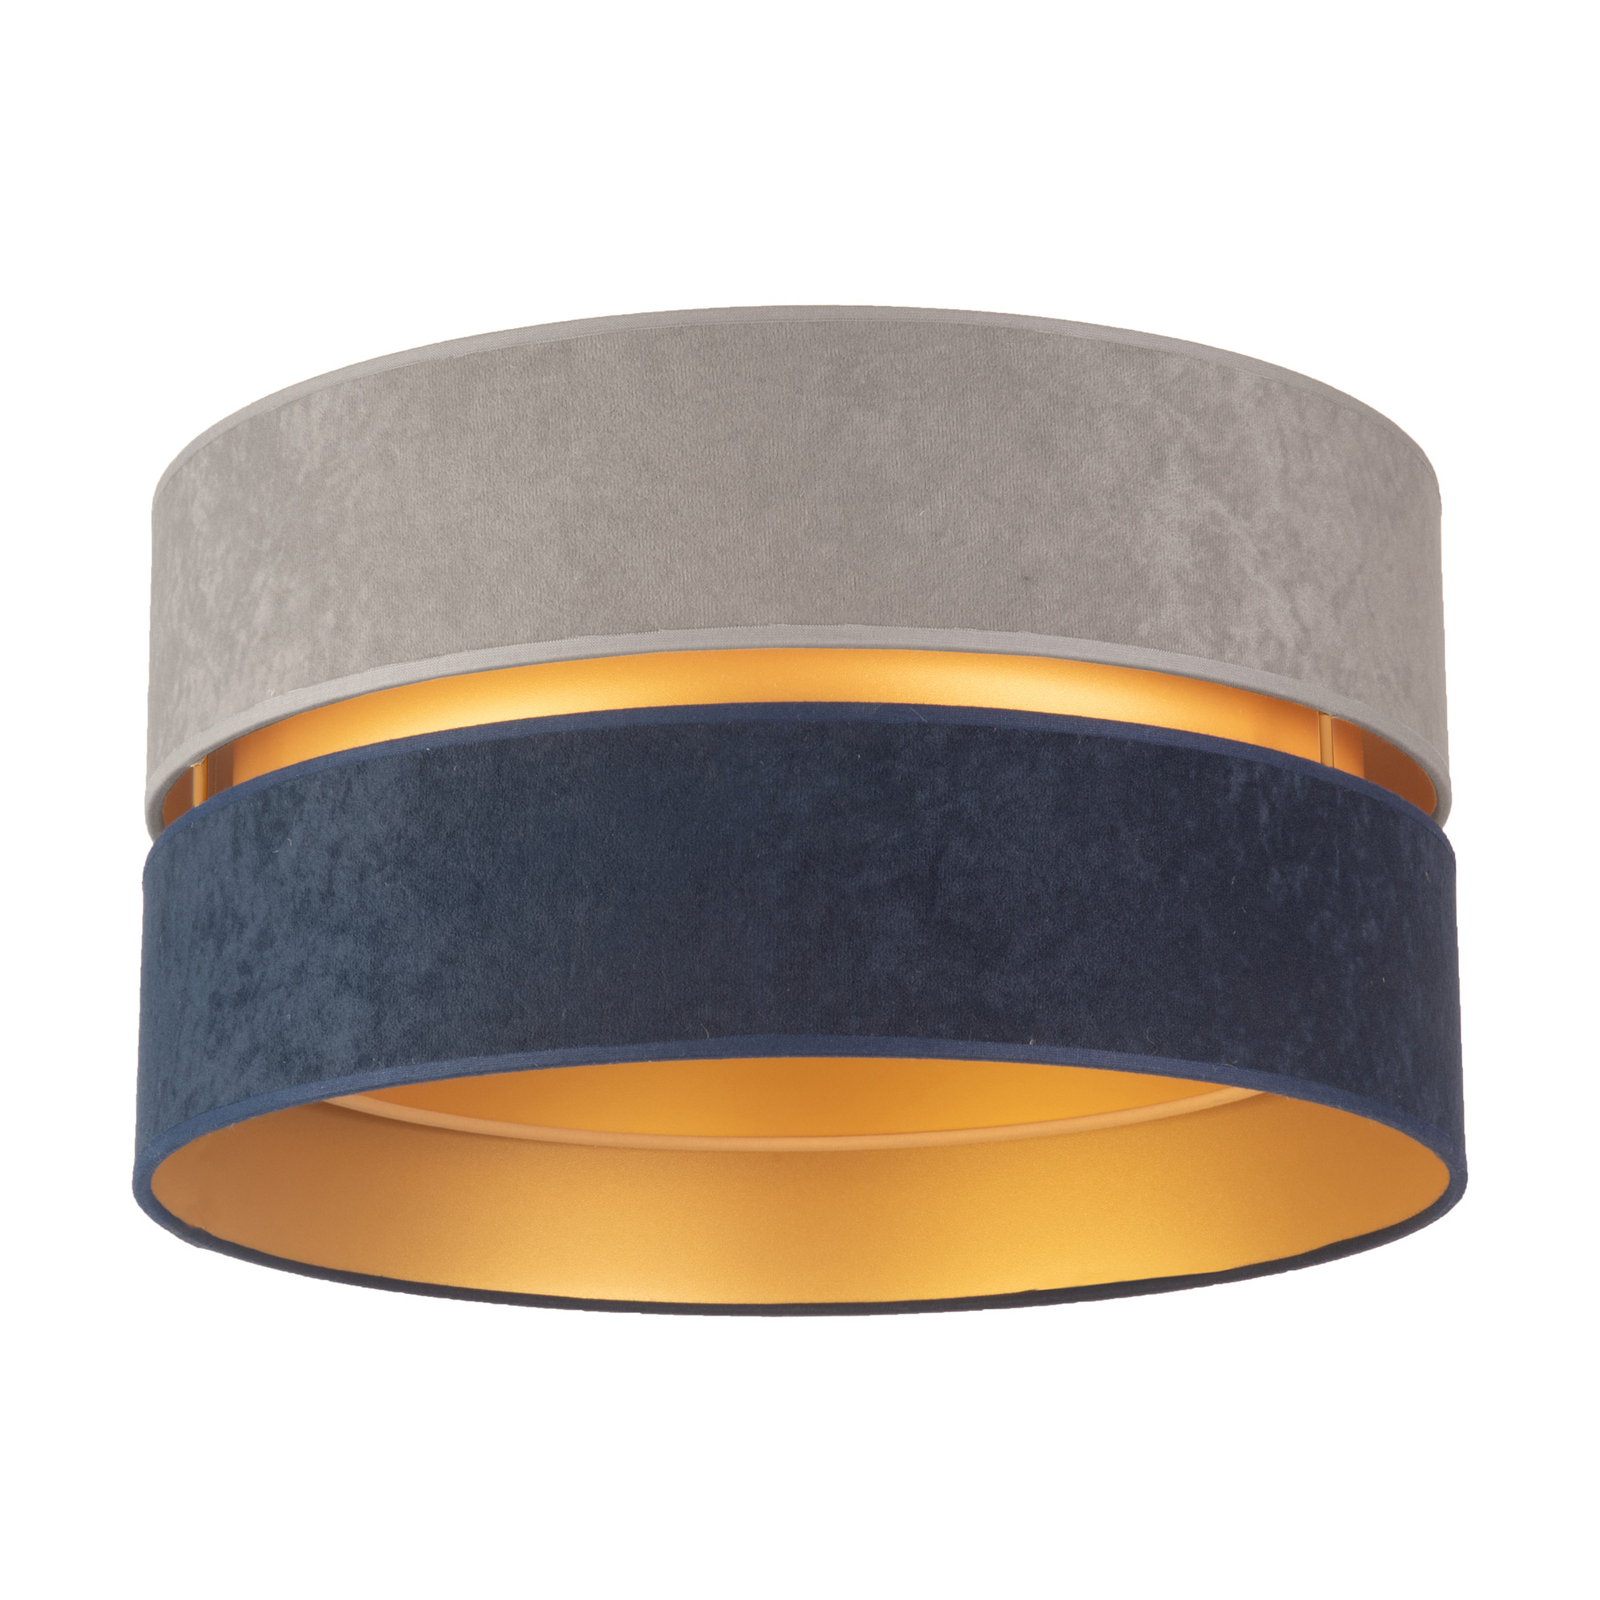 Duo mennyezeti lámpa, t.kék/szürke/arany, Ø60cm